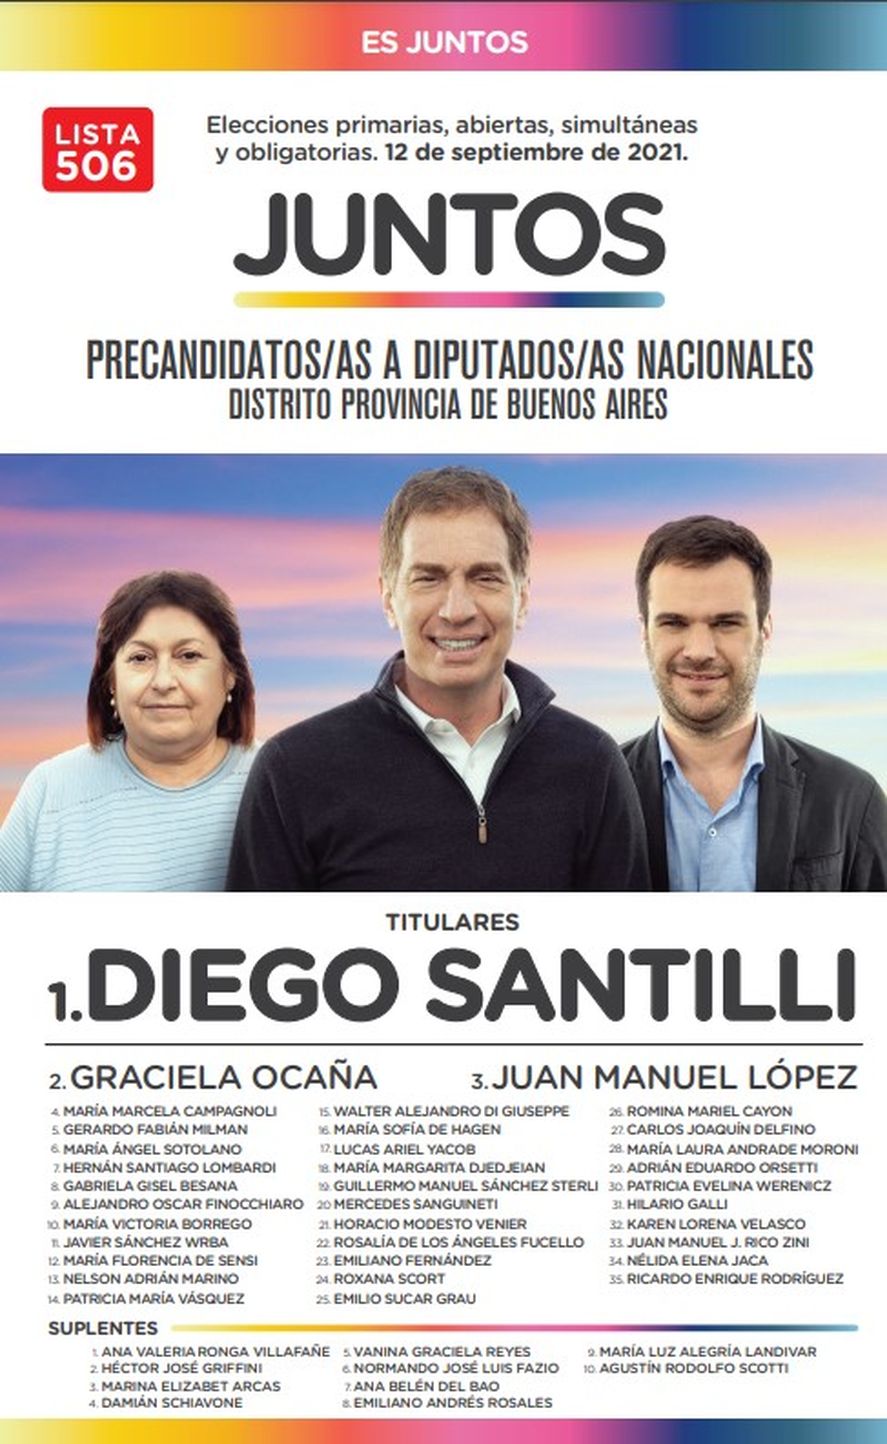 Elecciones 2021: la boleta de Juntos, con Diego Santilli como precandidato